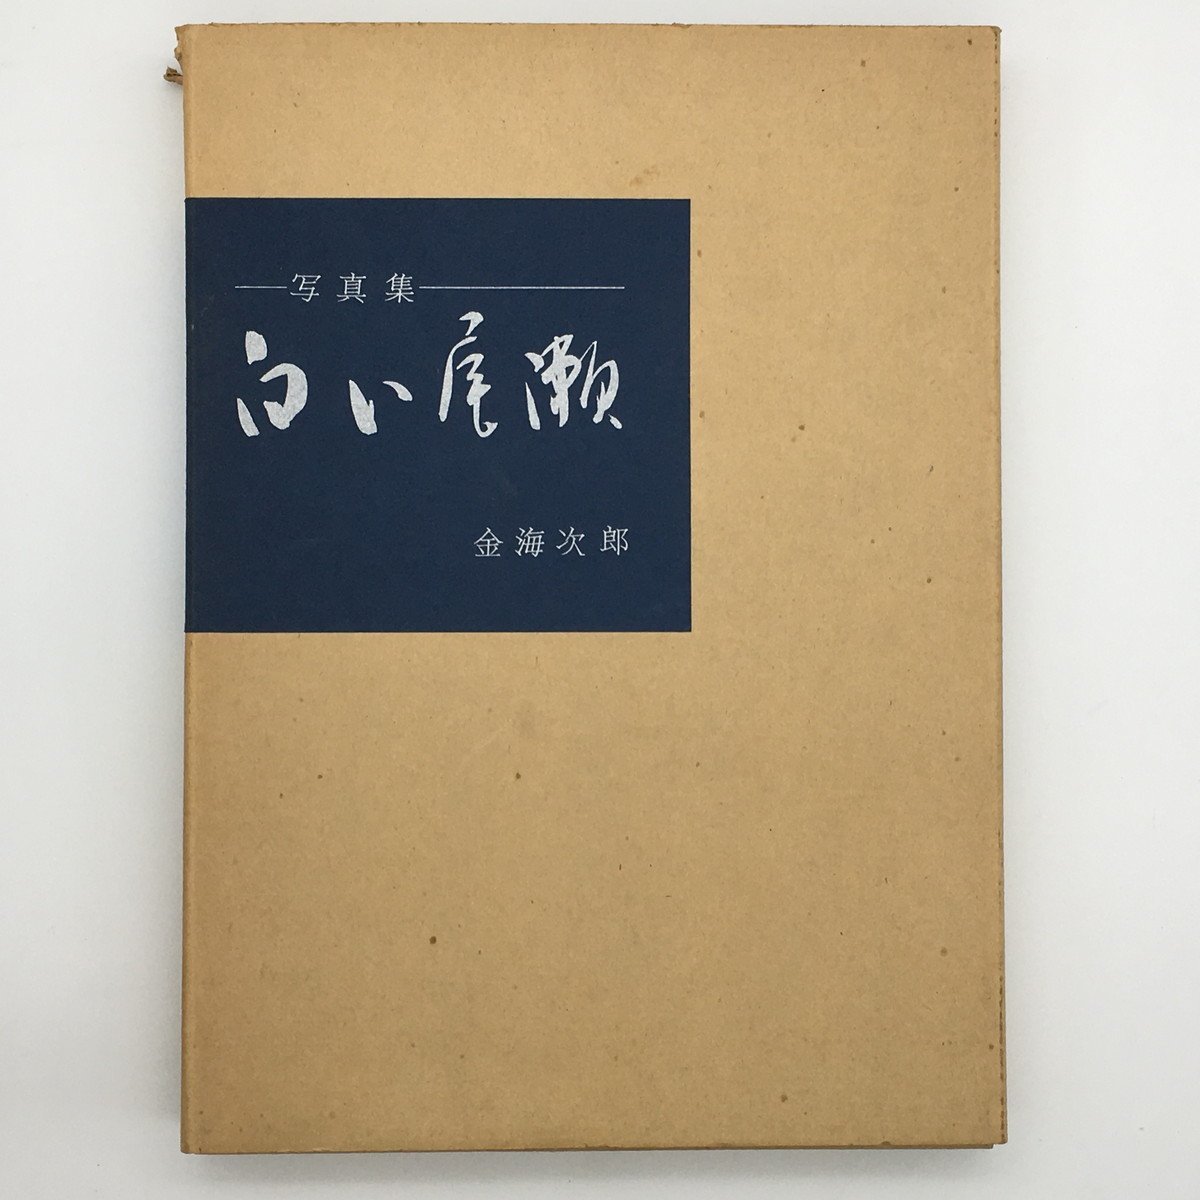 Contiene 6 copias originales Fotolibro Shiroi Oze Escrito a mano y firmado por Jiro Kankai Edición limitada a 100 ejemplares Edición especial, arte, entretenimiento, album de fotos, Naturaleza, paisaje